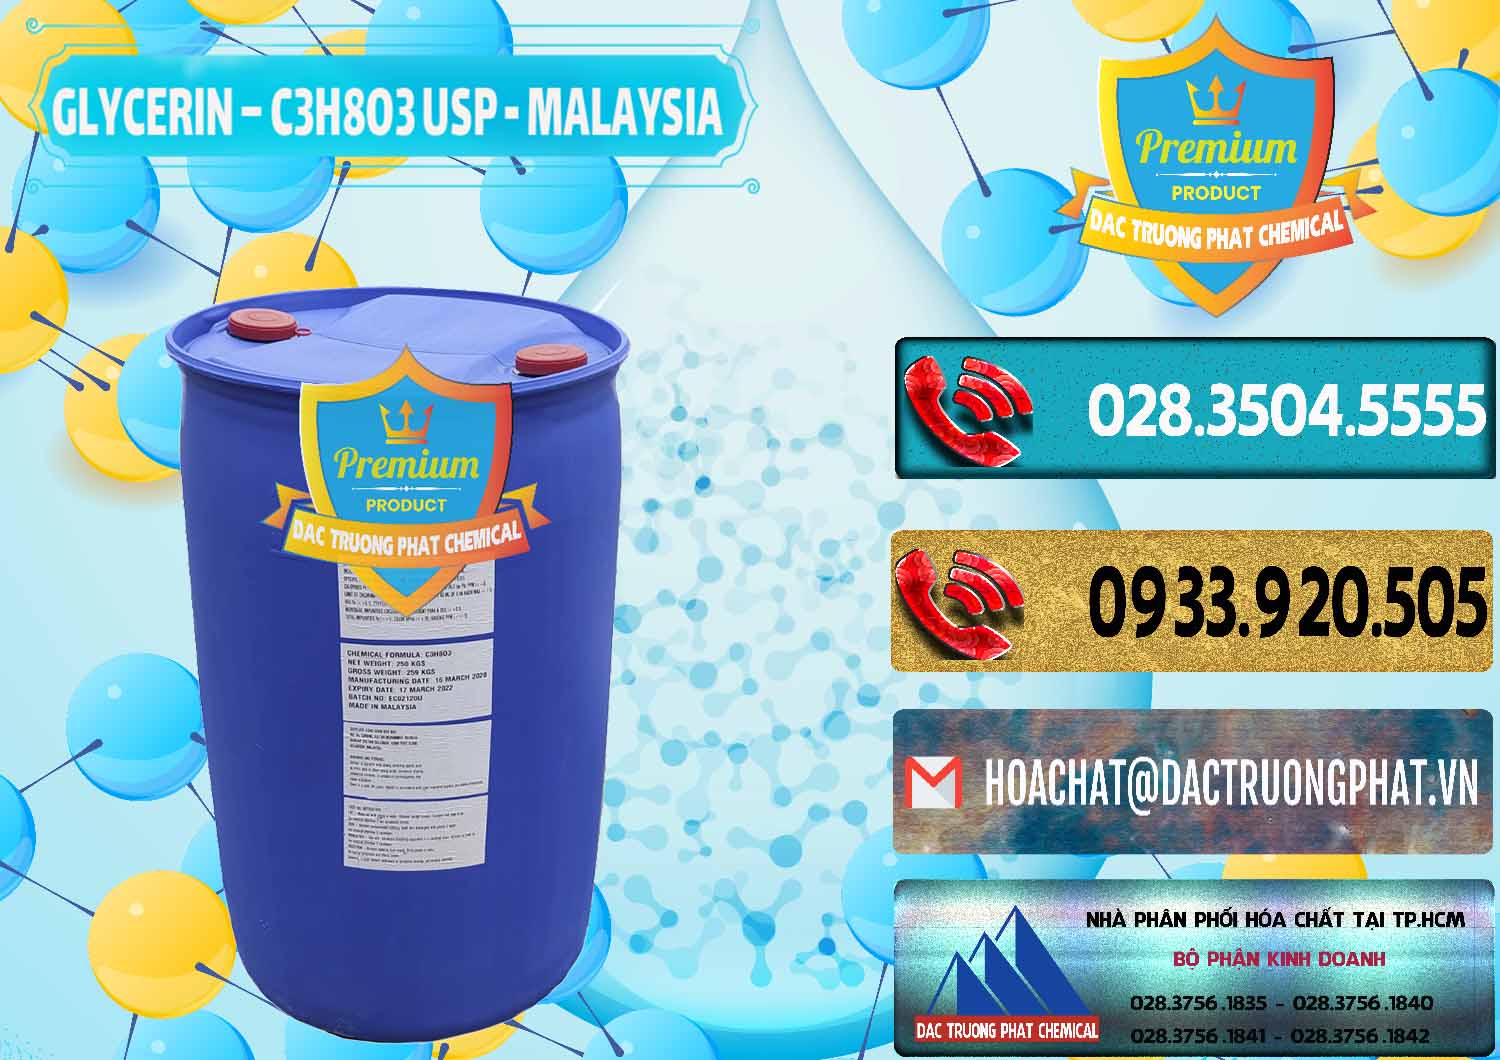 Cty bán và phân phối Glycerin – C3H8O3 USP Malaysia - 0233 - Chuyên phân phối - nhập khẩu hóa chất tại TP.HCM - hoachatdetnhuom.com